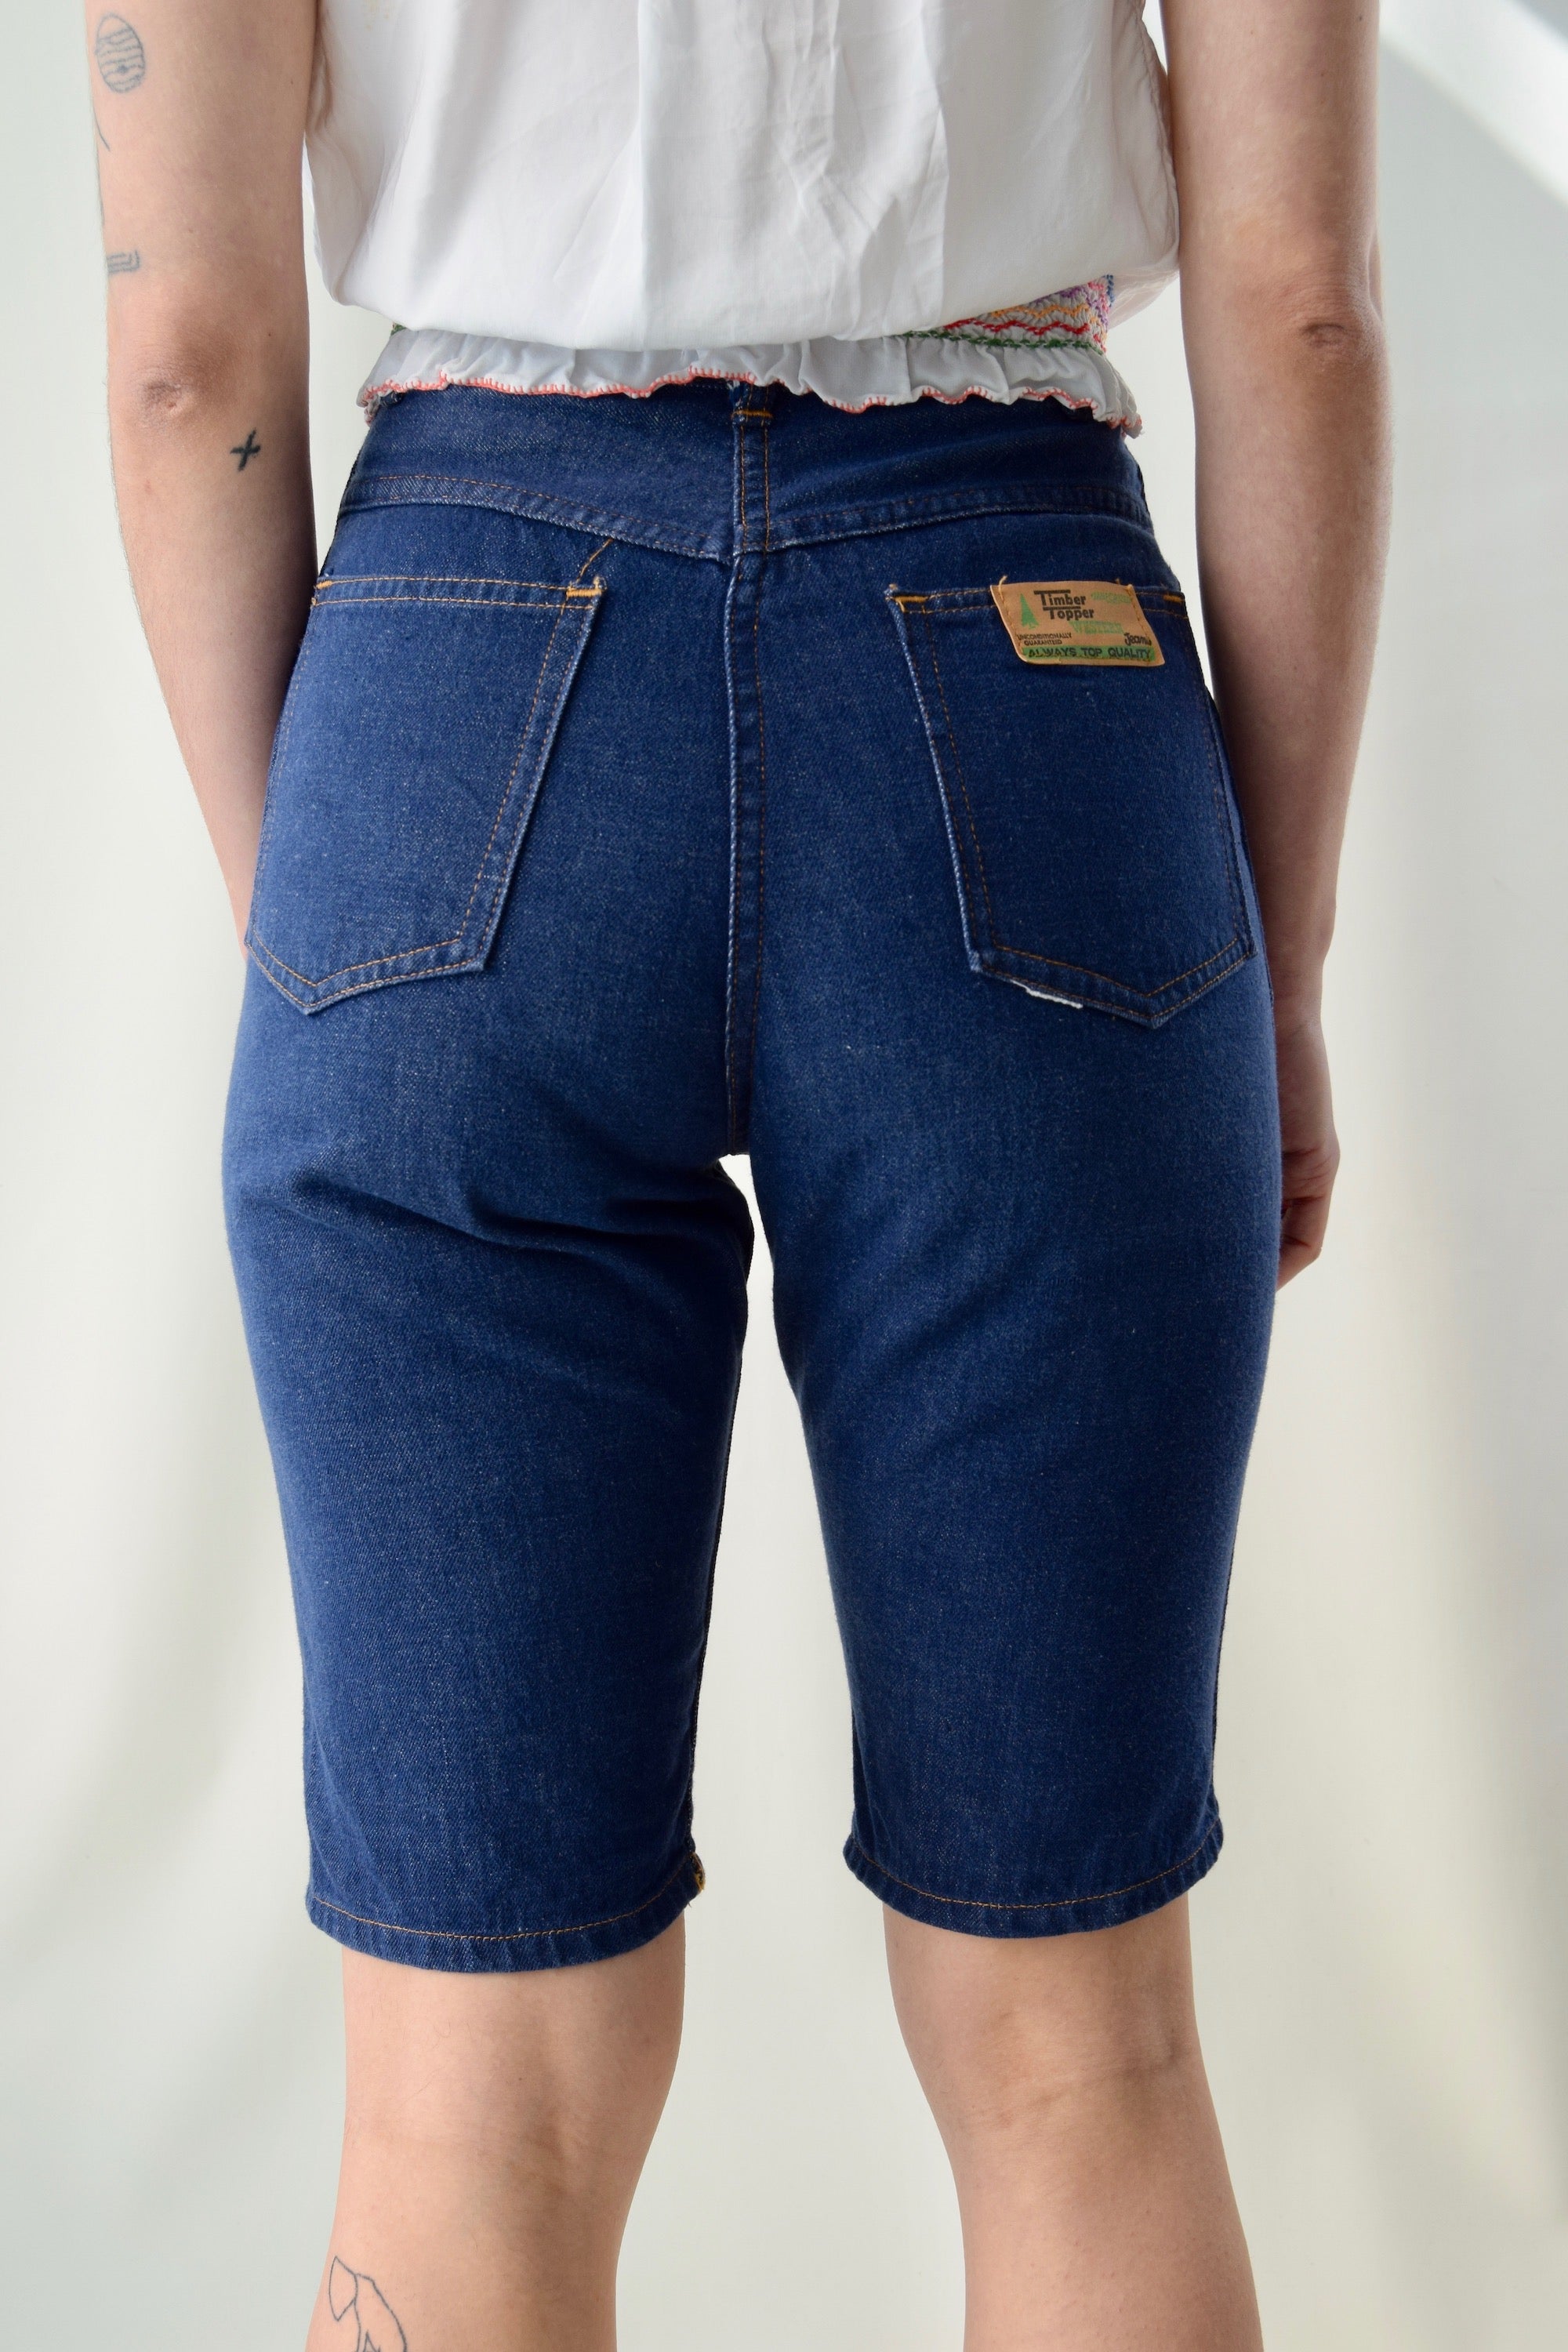 Vintage "Timber Topper Western Jeans" Denim Shorts